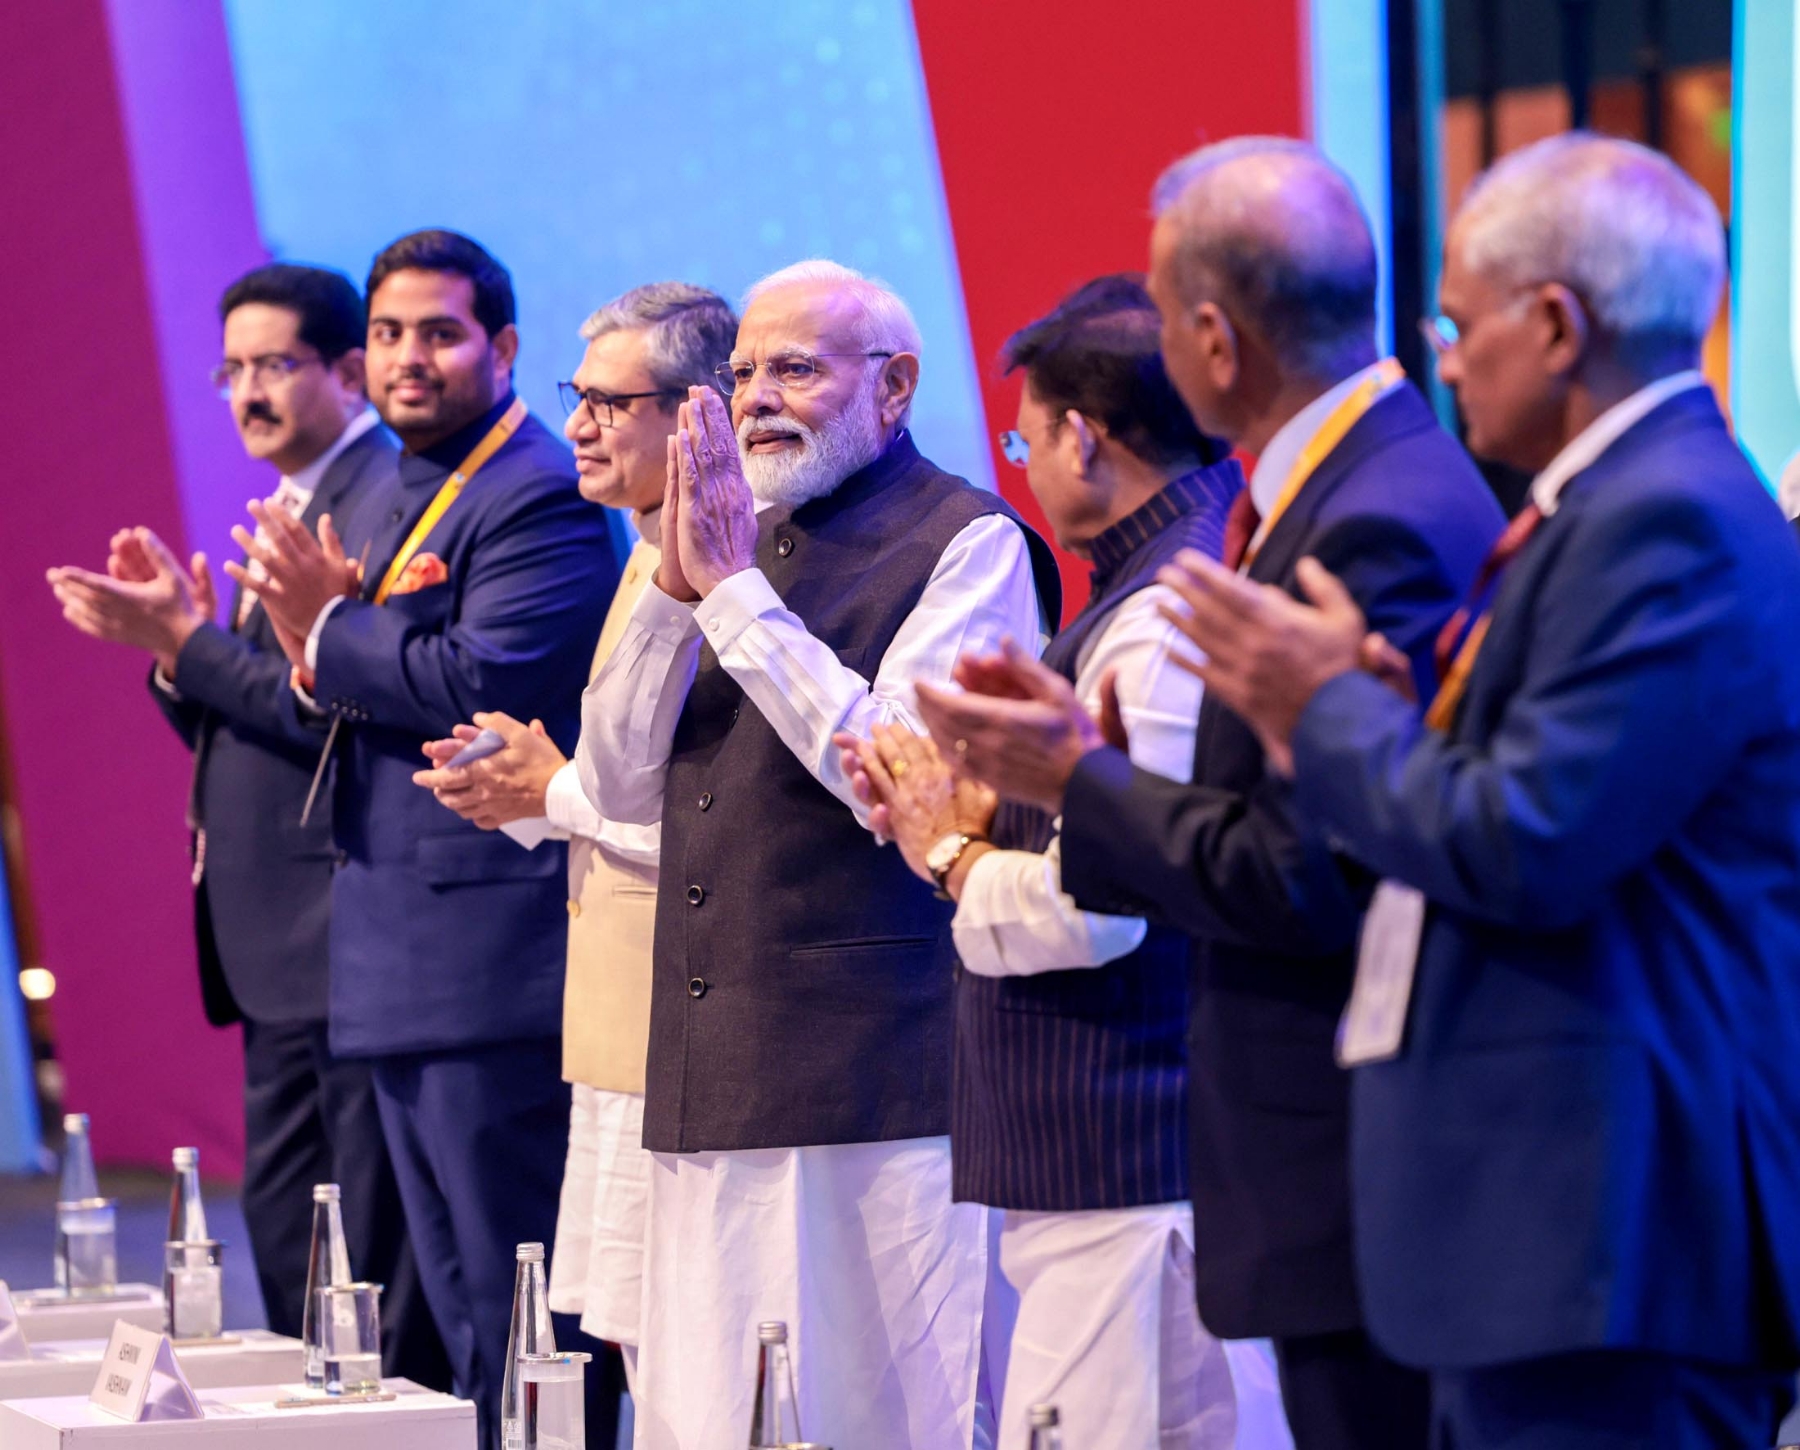 प्रधानमंत्री नरेंद्र मोदी ने प्रगति मैदान के भारत मंडपम में इंडिया मोबाइल कांग्रेस (आईएमसी) के 7वें संस्करण का उद्घाटन करने के बाद प्रदर्शनी का दौरा करते हुए। 